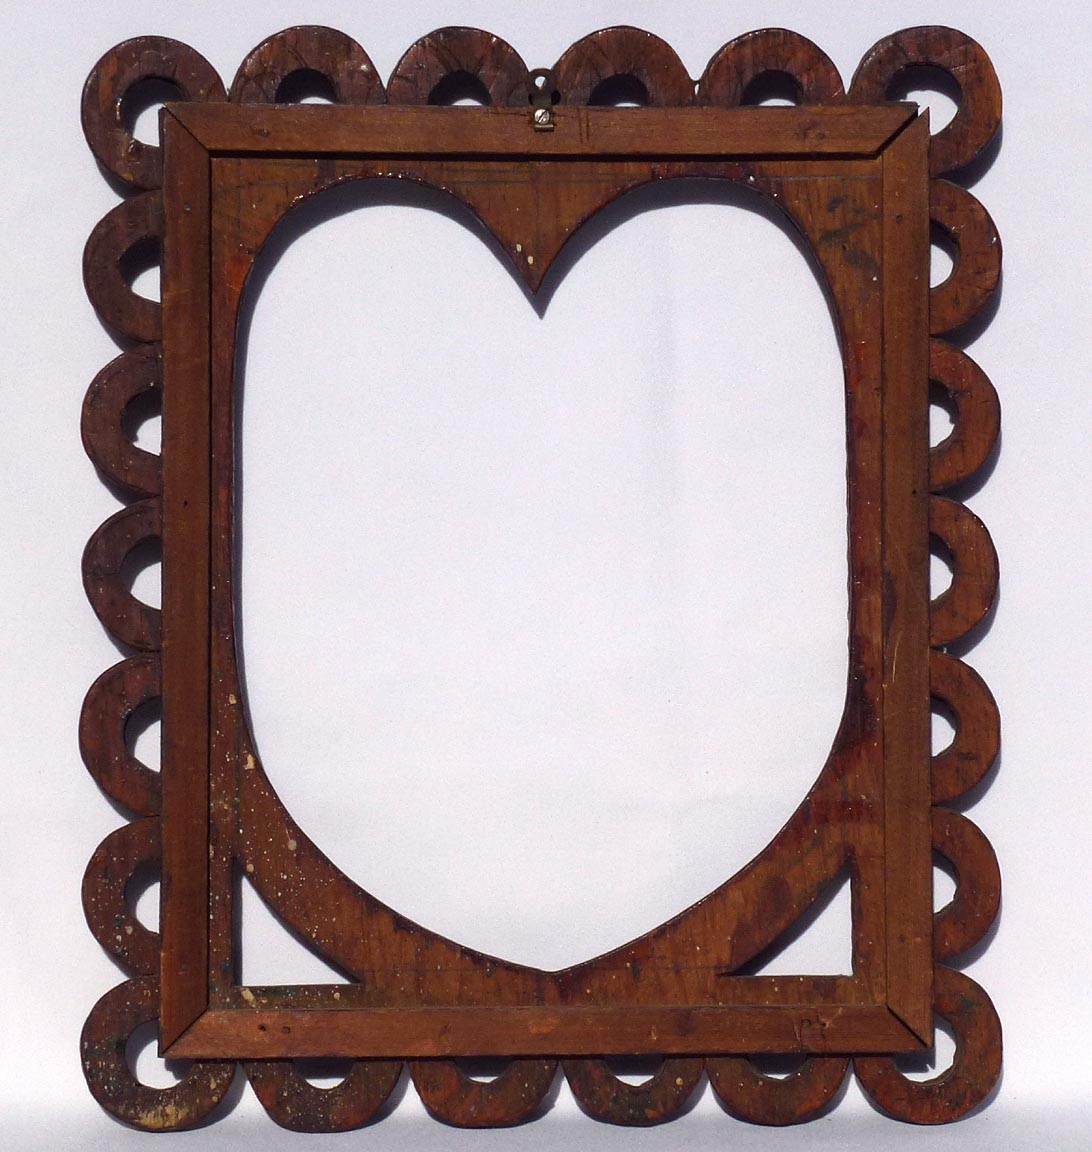 Heart shaped tramp art frame